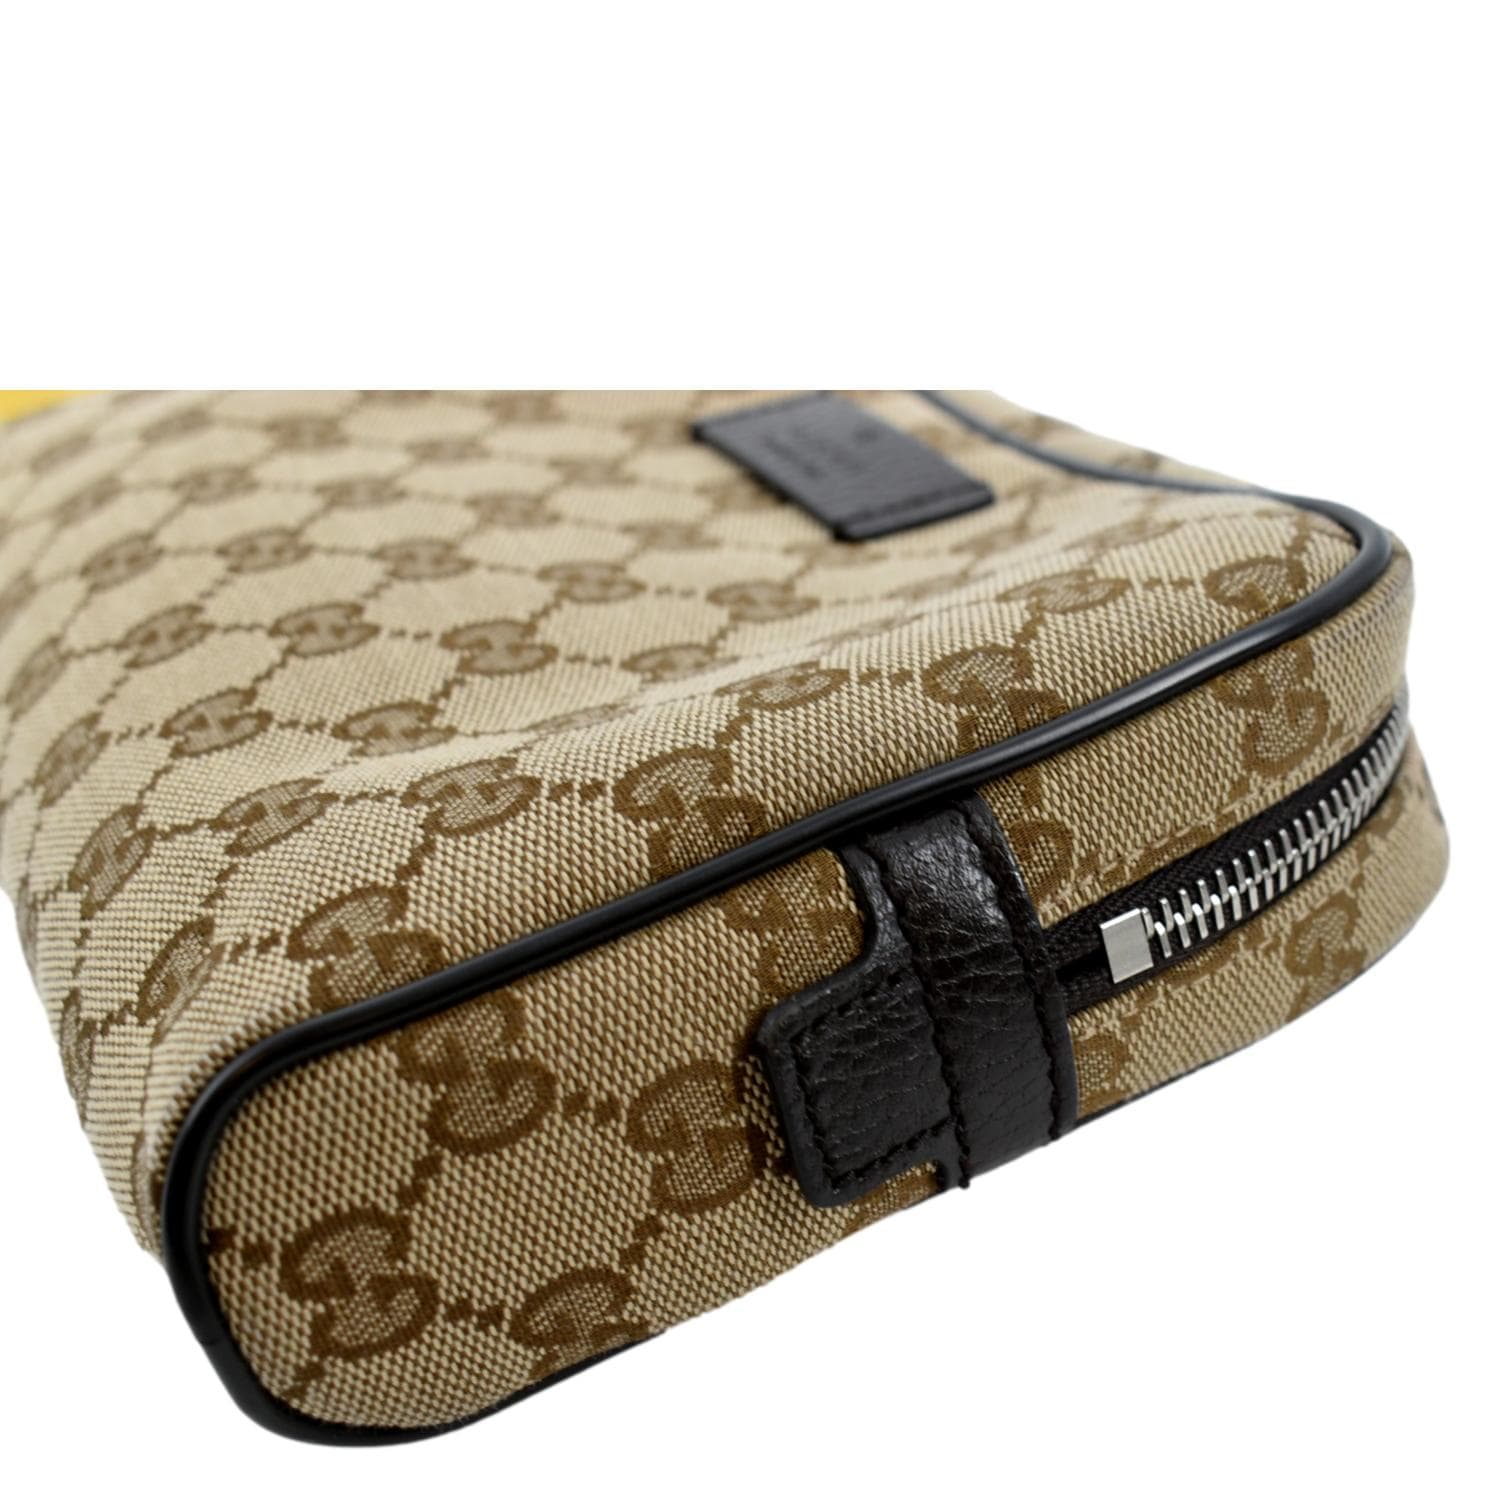 Gucci Navy Blue Monogram GG Belt Bag Fanny Pack Waist Pouch